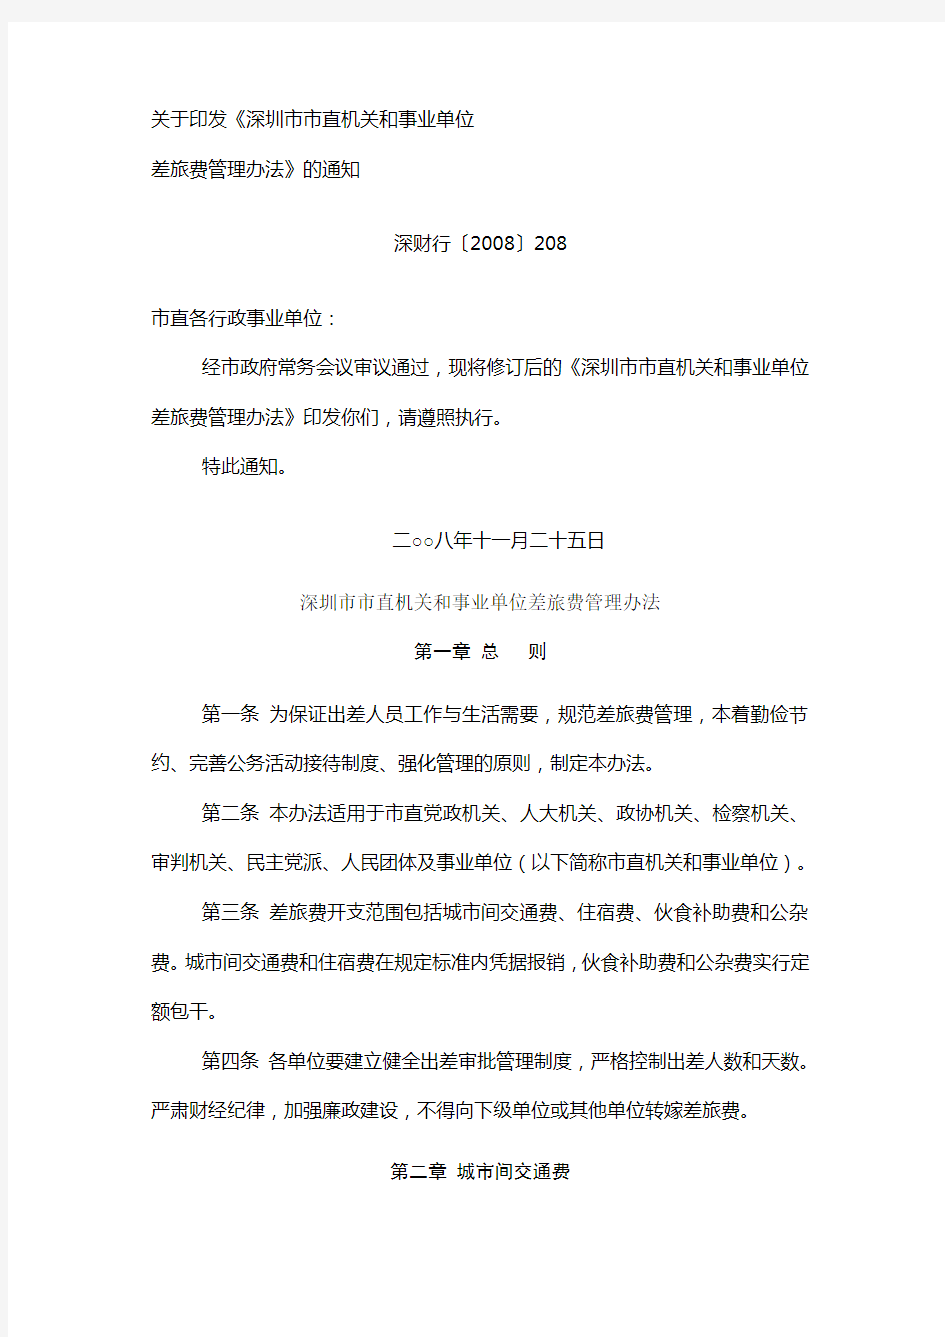 关于印发《深圳市市直机关和事业单位差旅费管理办法》的通知